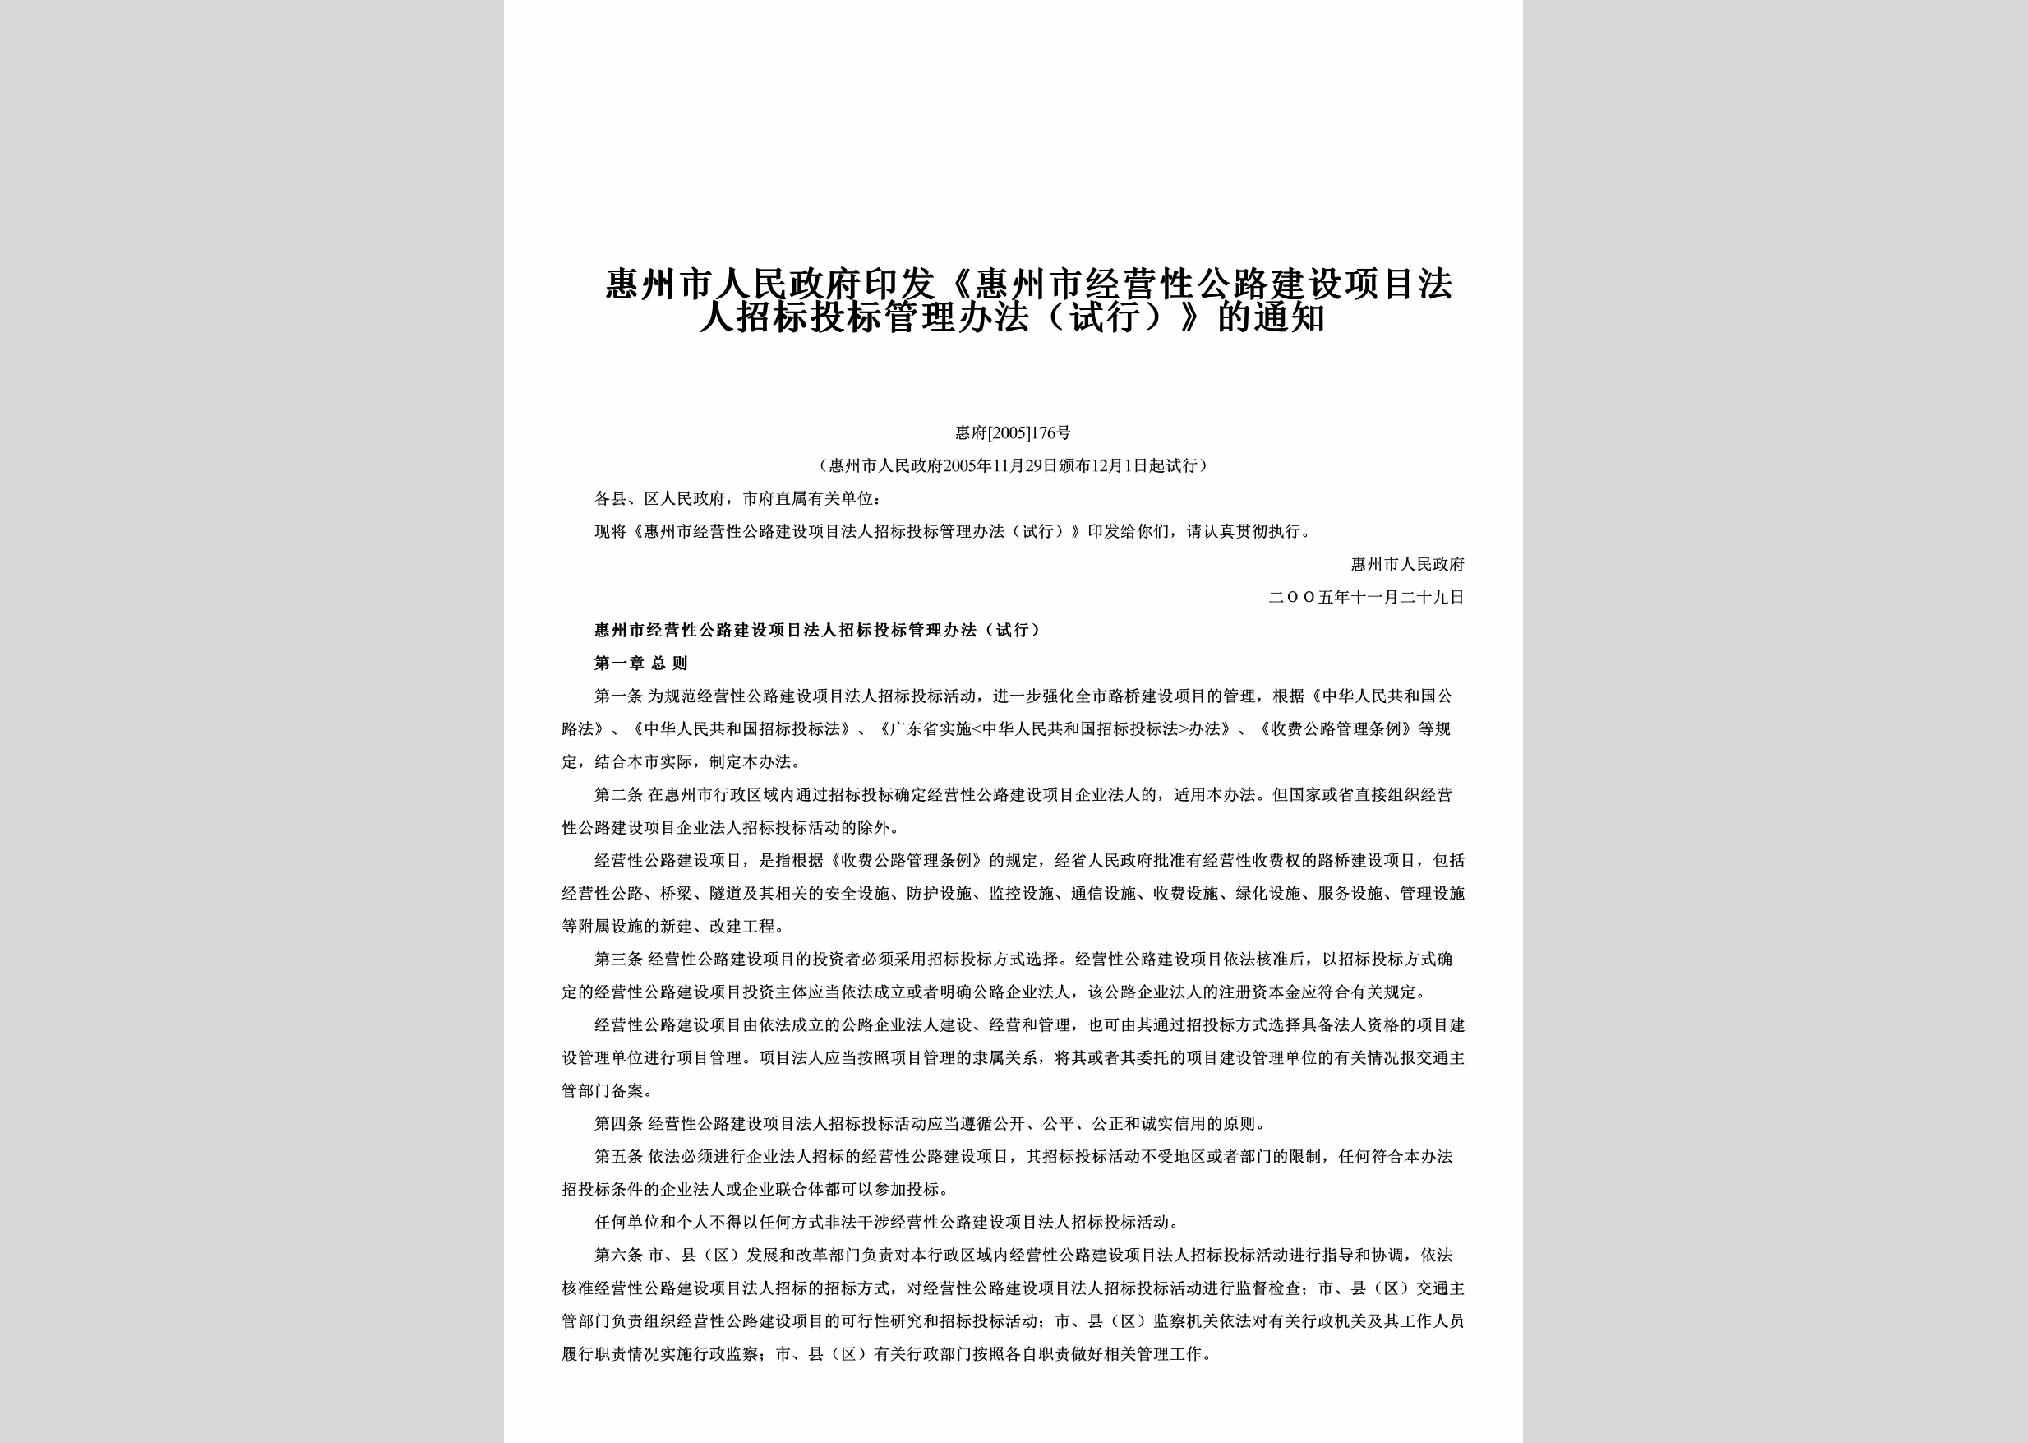 惠府[2005]176号：印发《惠州市经营性公路建设项目法人招标投标管理办法（试行）》的通知